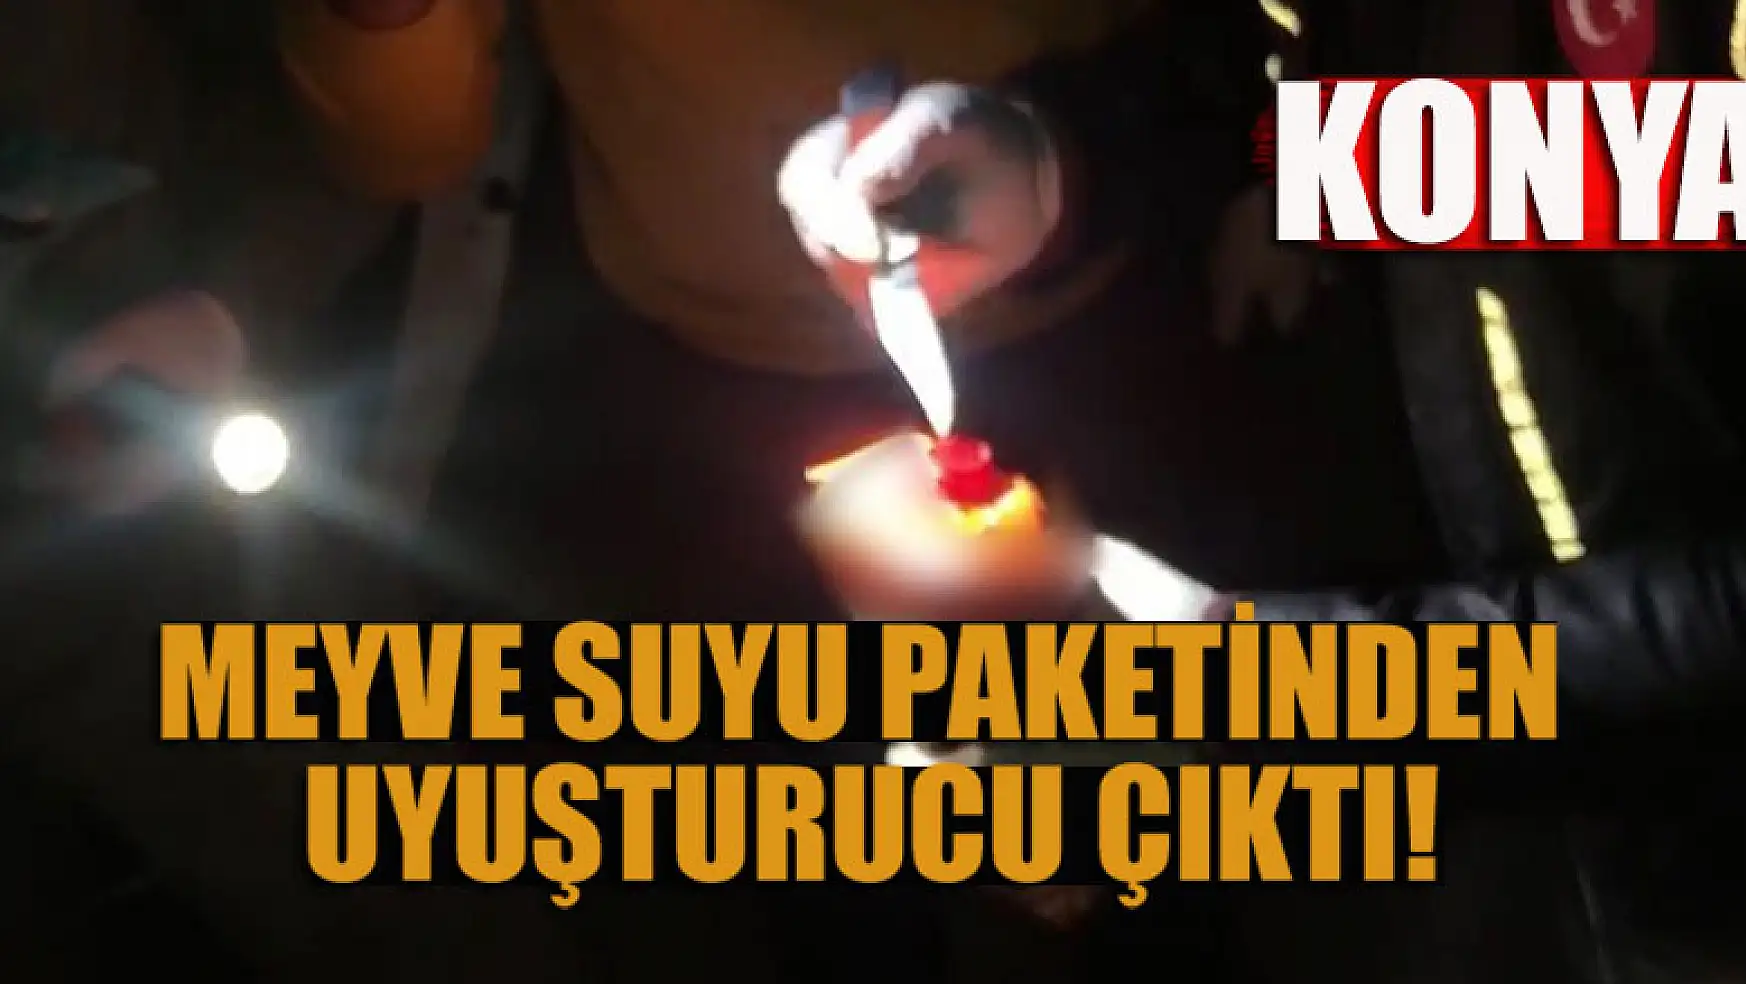 Konya'da meyve suyu paketinden uyuşturucu çıktı